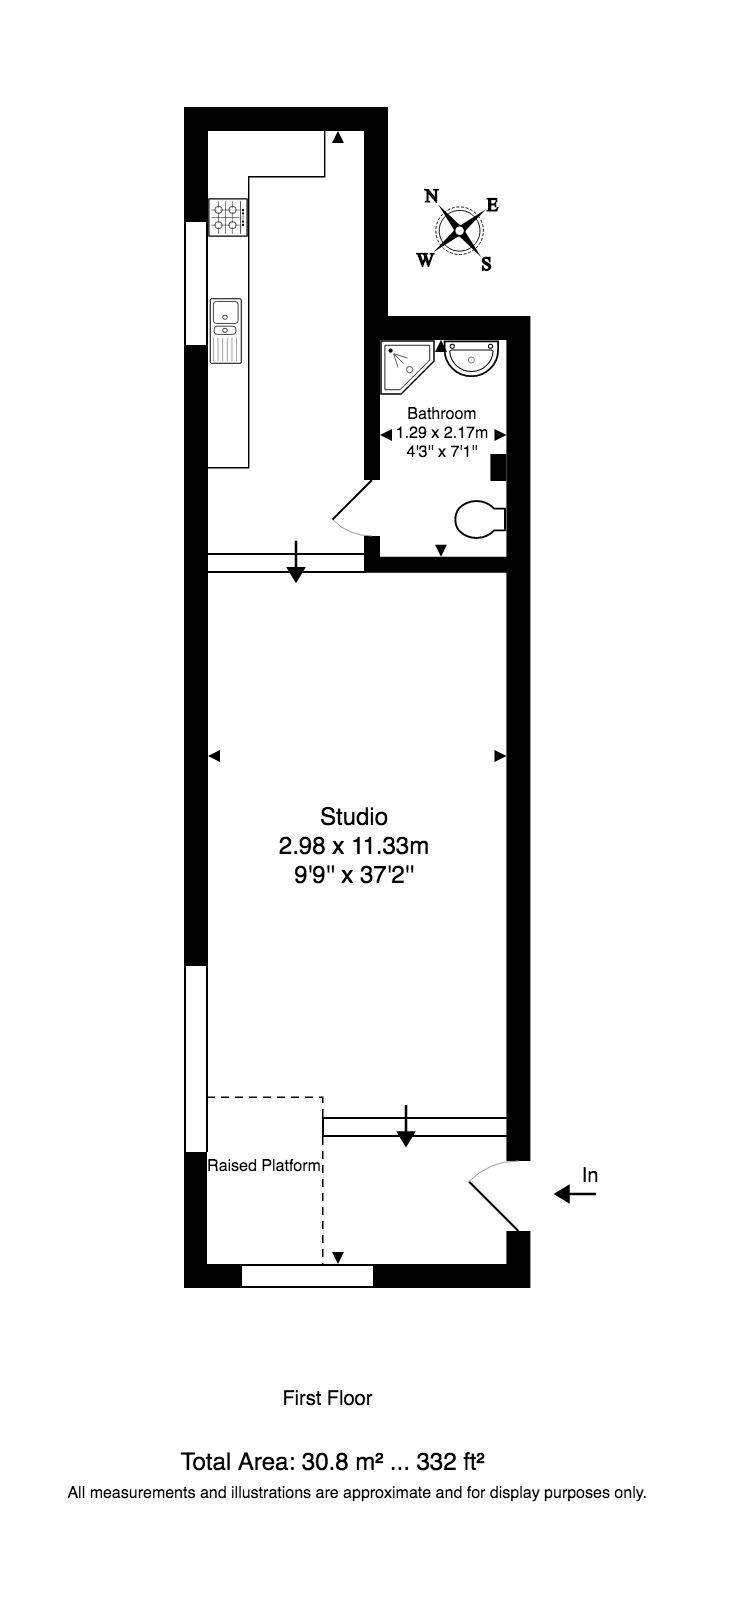 1 Bedrooms Studio to rent in Northfield Ave, Ealing W13